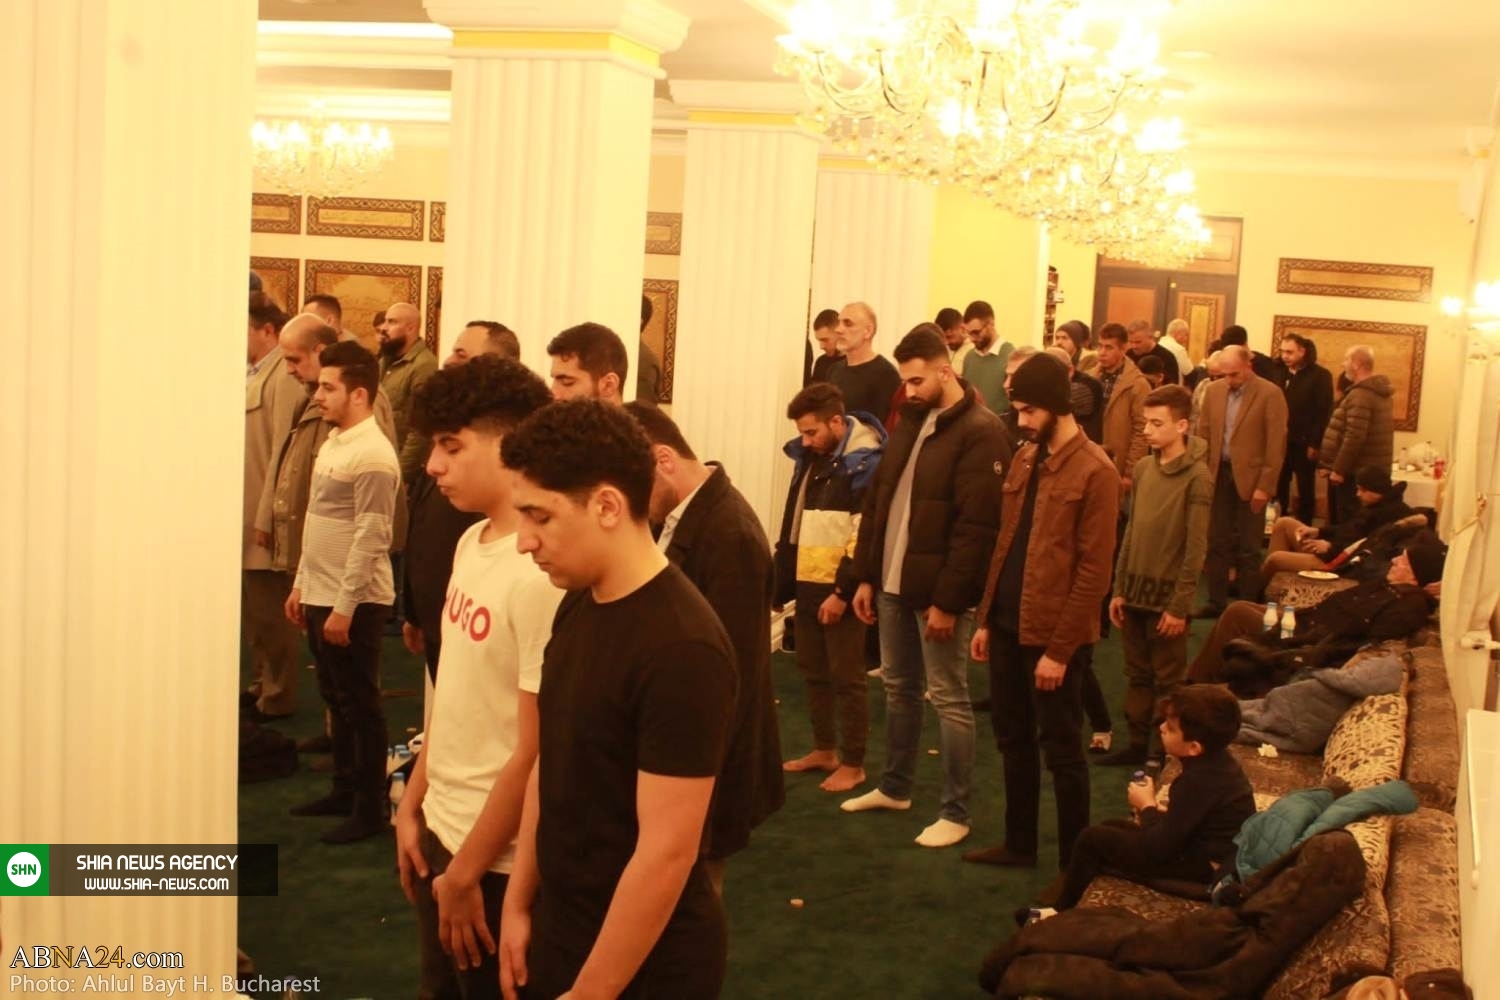 افتتاح ساختمان جدید مرکز اسلامی اهل بیت(ع) در پایتخت رومانی+ تصاویر